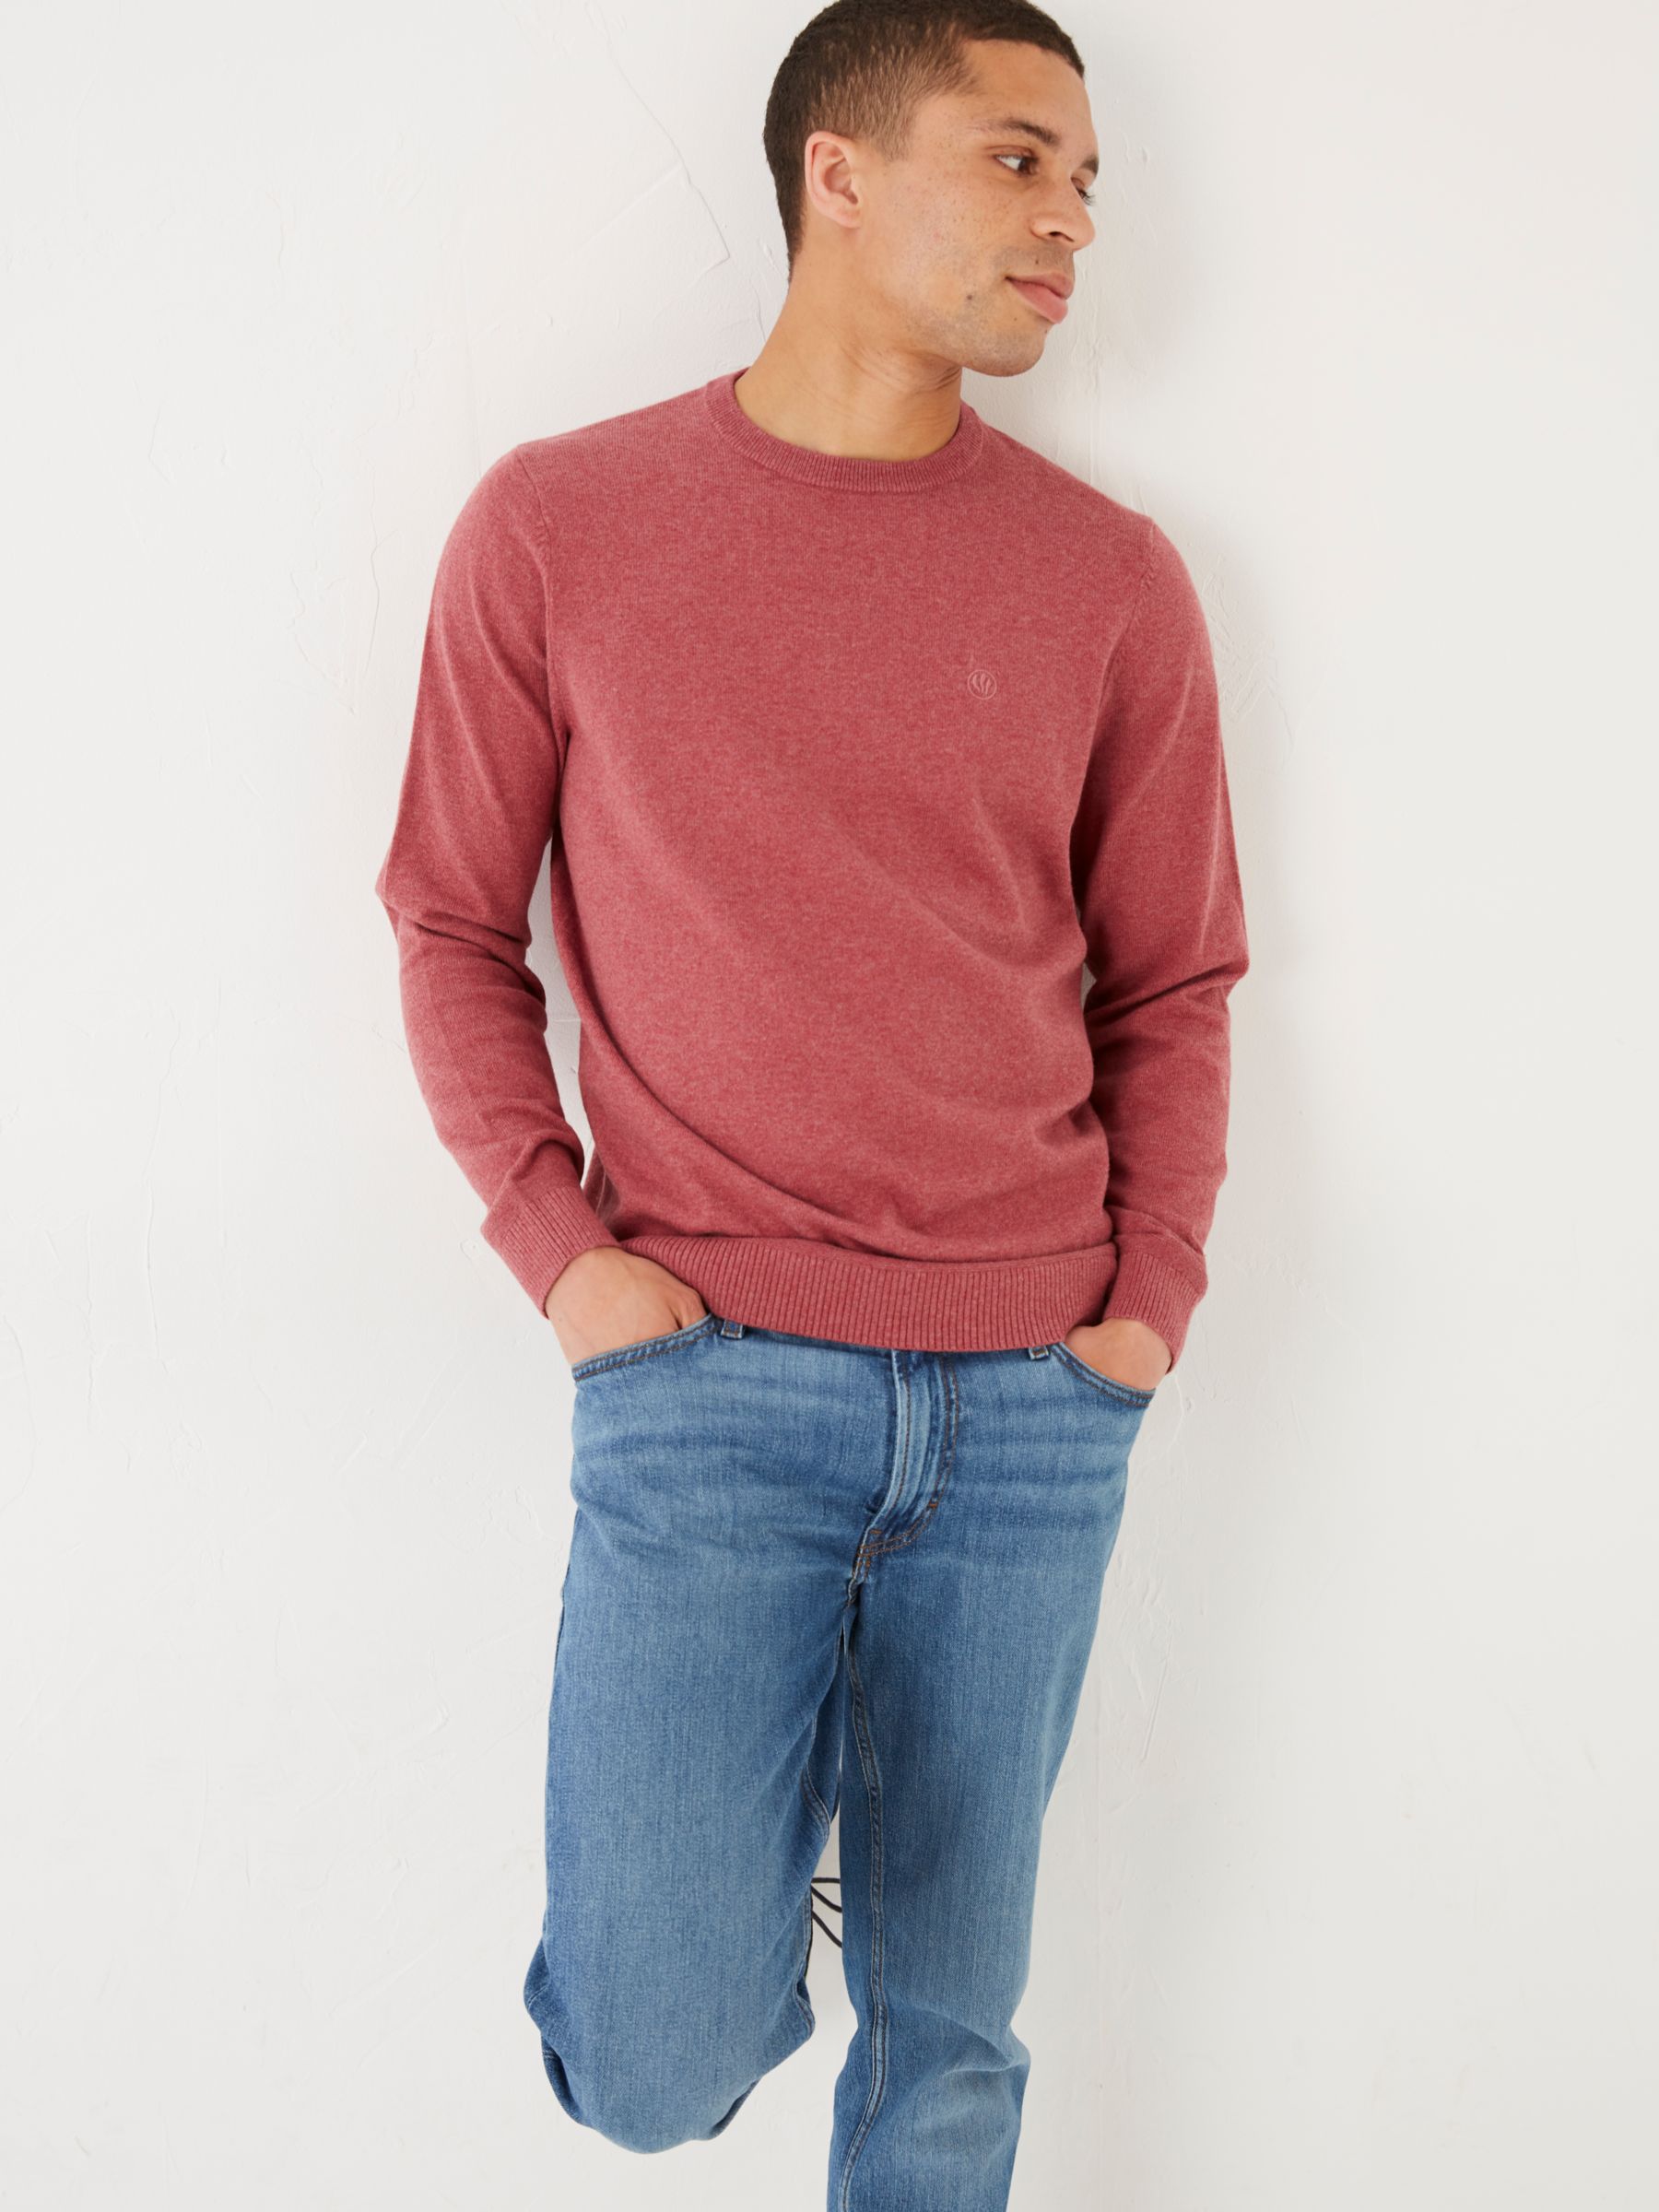 Heavy Wool Sweaters For Men | John Lewis & Partners